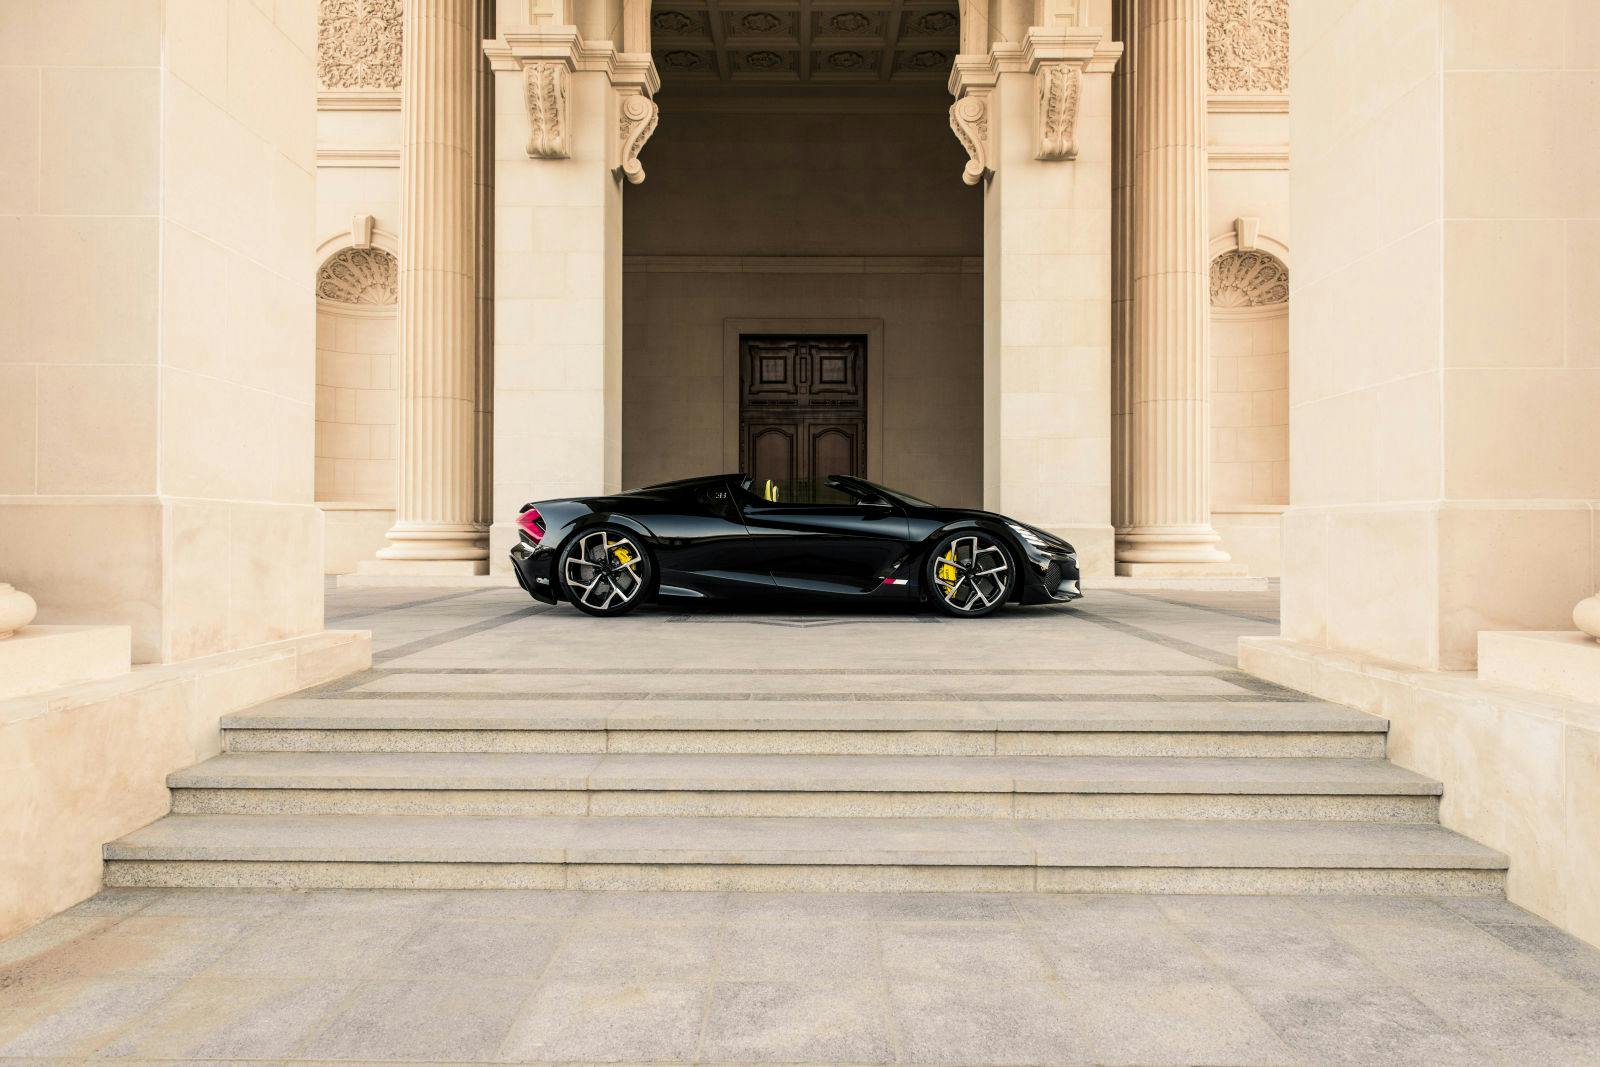 Der Bugatti W16 Mistral hatte seinen ersten Auftritt in Riad, Saudi-Arabien.  